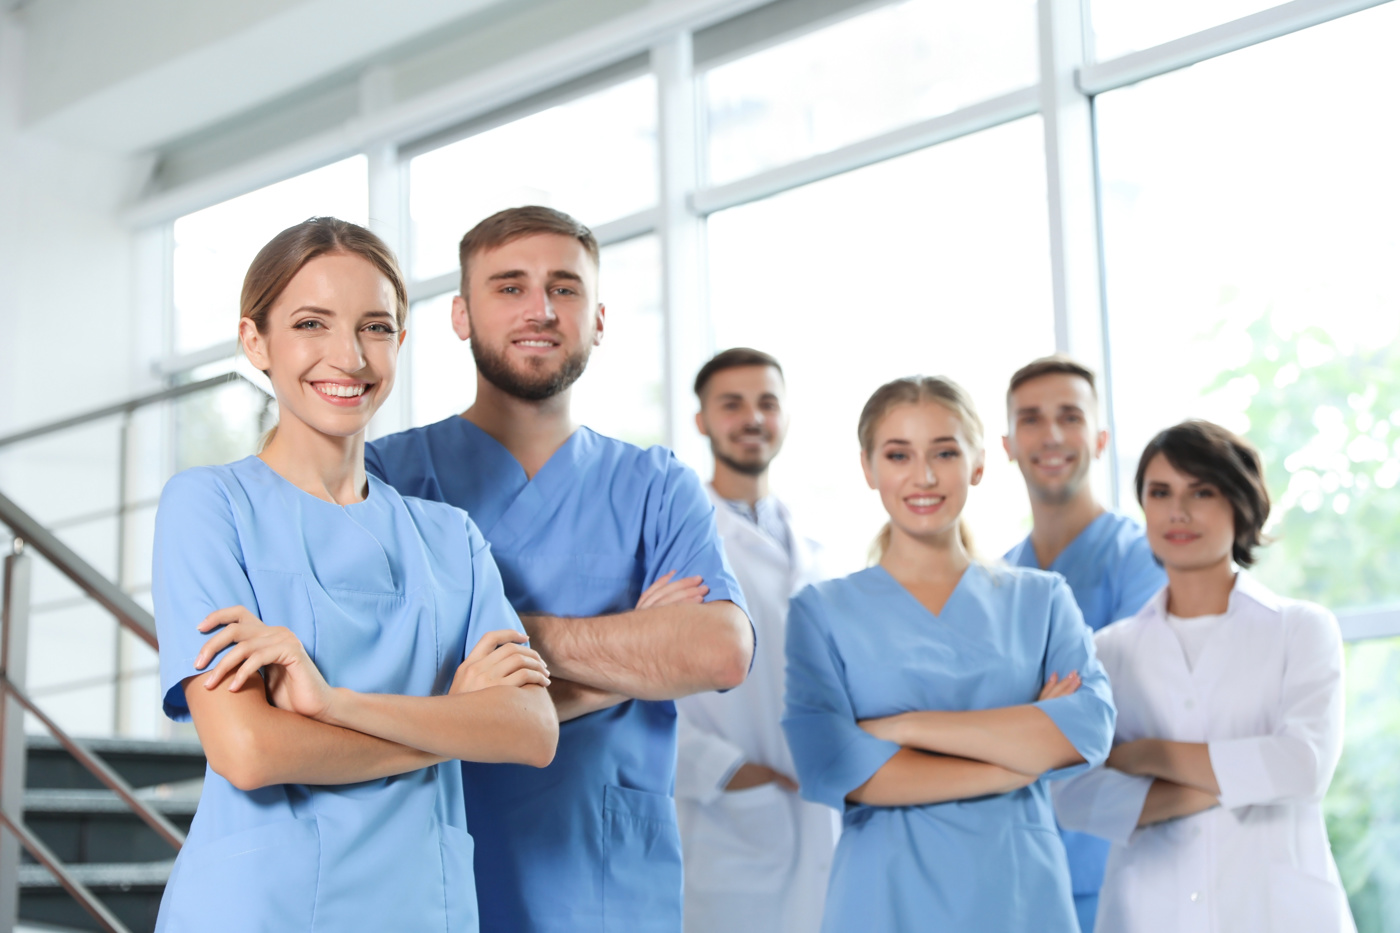 Eine Gruppe von Gesundheitspersonal, u.a. eine Medizinische Teamleiterin, ist mit voller Elan bei der Arbeit.